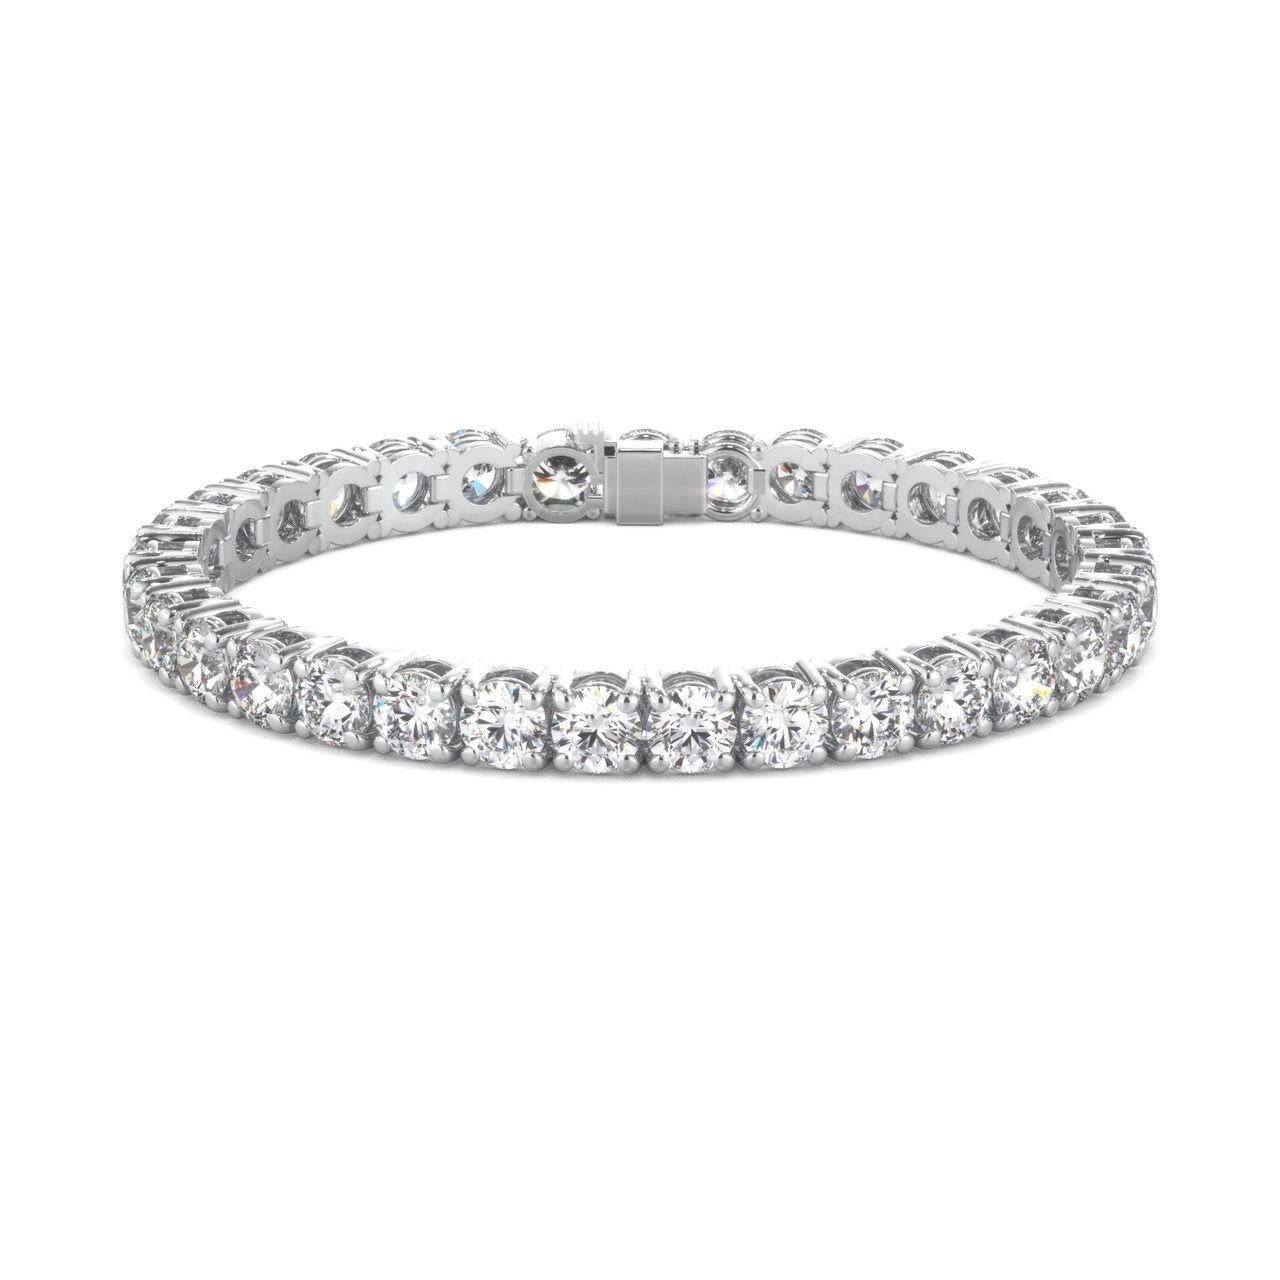 Ce merveilleux bracelet de tennis en diamants est doté d'une agréable ligne aérienne à 4 branches. Il comporte également des diamants ronds d'une valeur totale de 5,50 carats.
F COLOR
CLARTÉ VS1/VS2